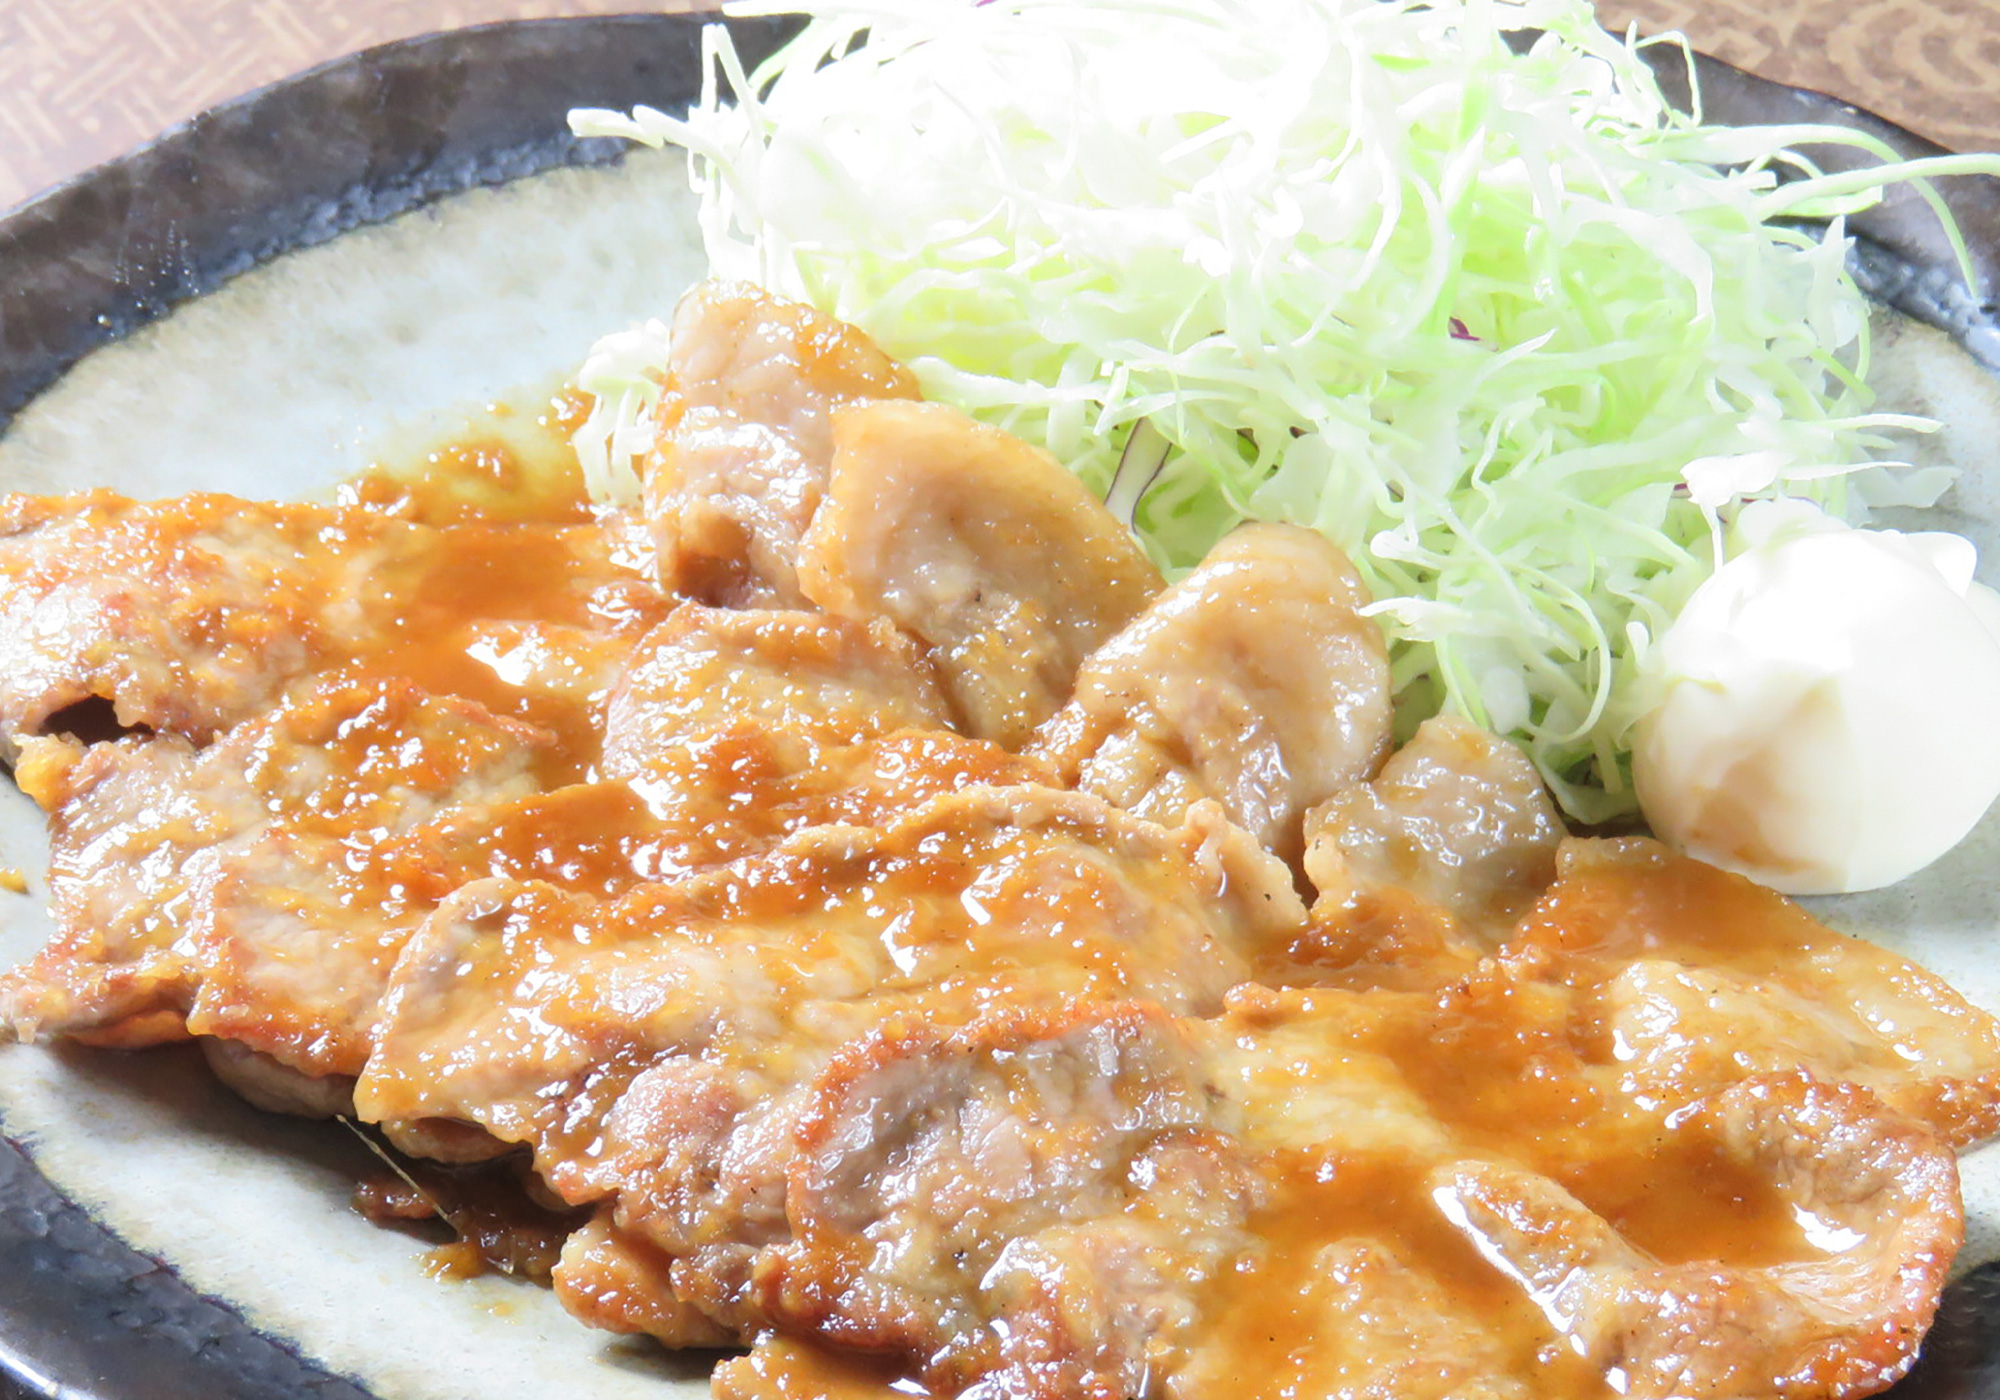 豚肉料理専門店 KIWAMIの岩中豚生姜焼きのイメージ画像です